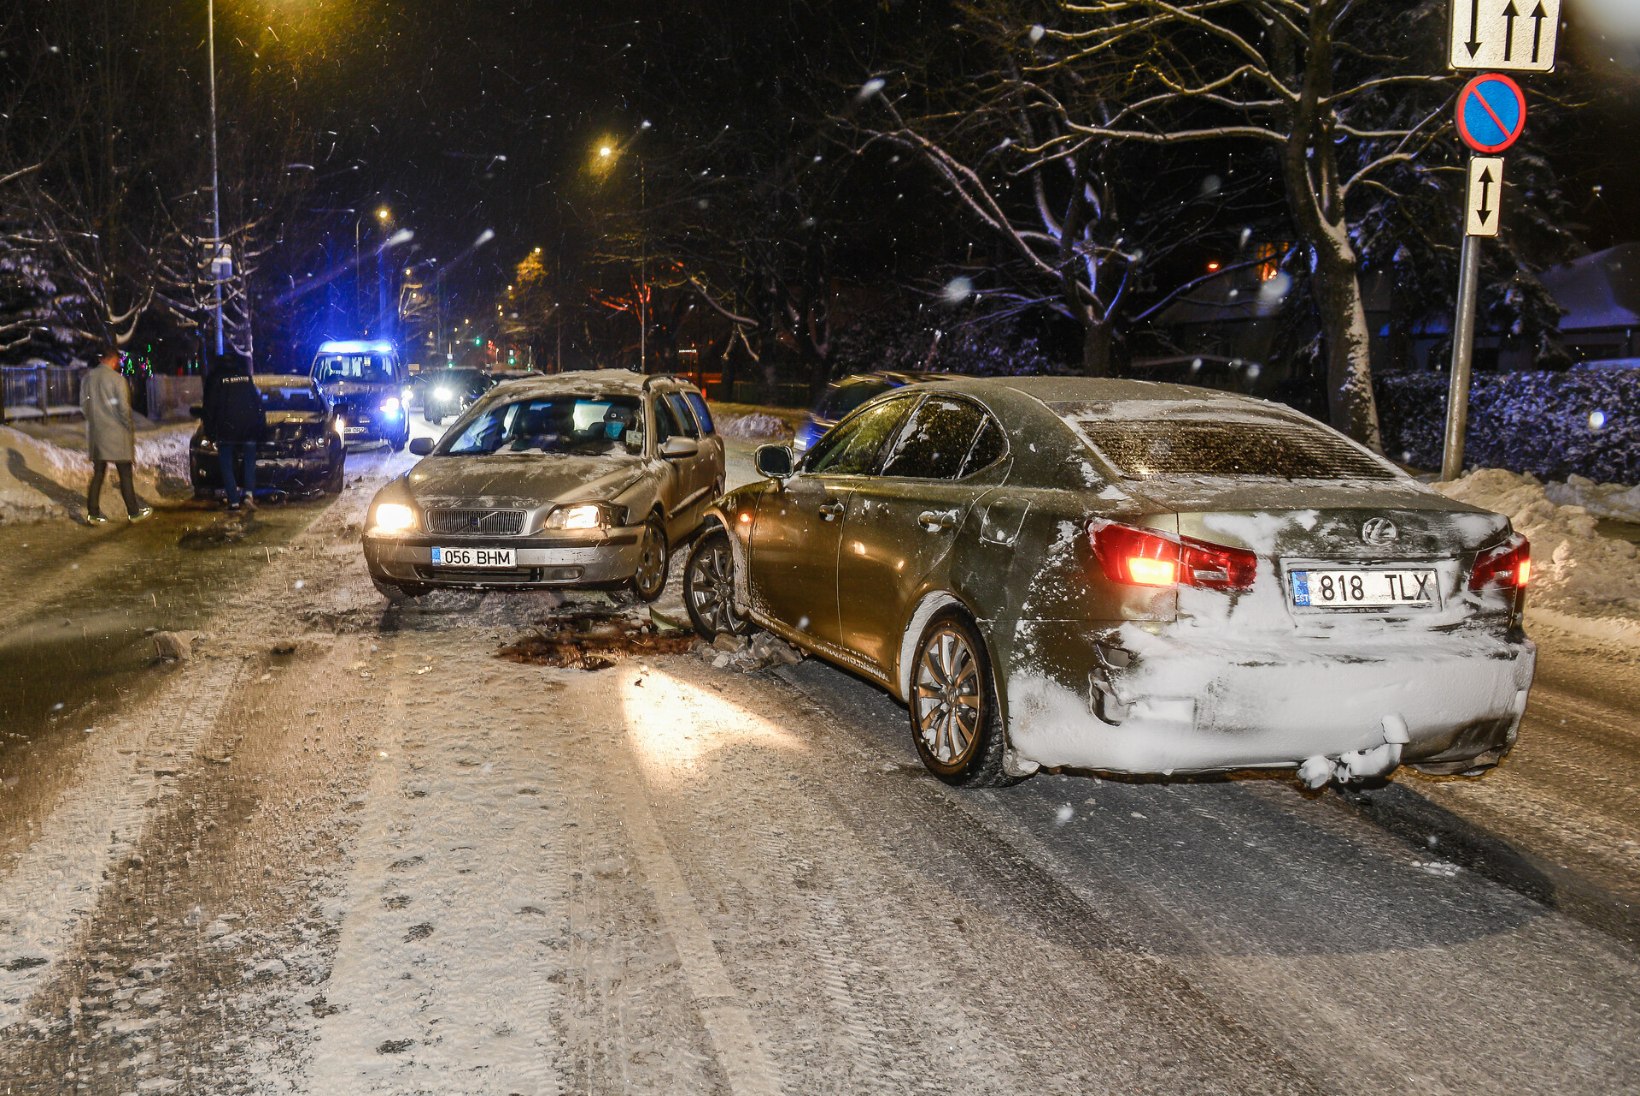 FOTOD | Tartu tuiksoonel põrkasid kokku kolm autot